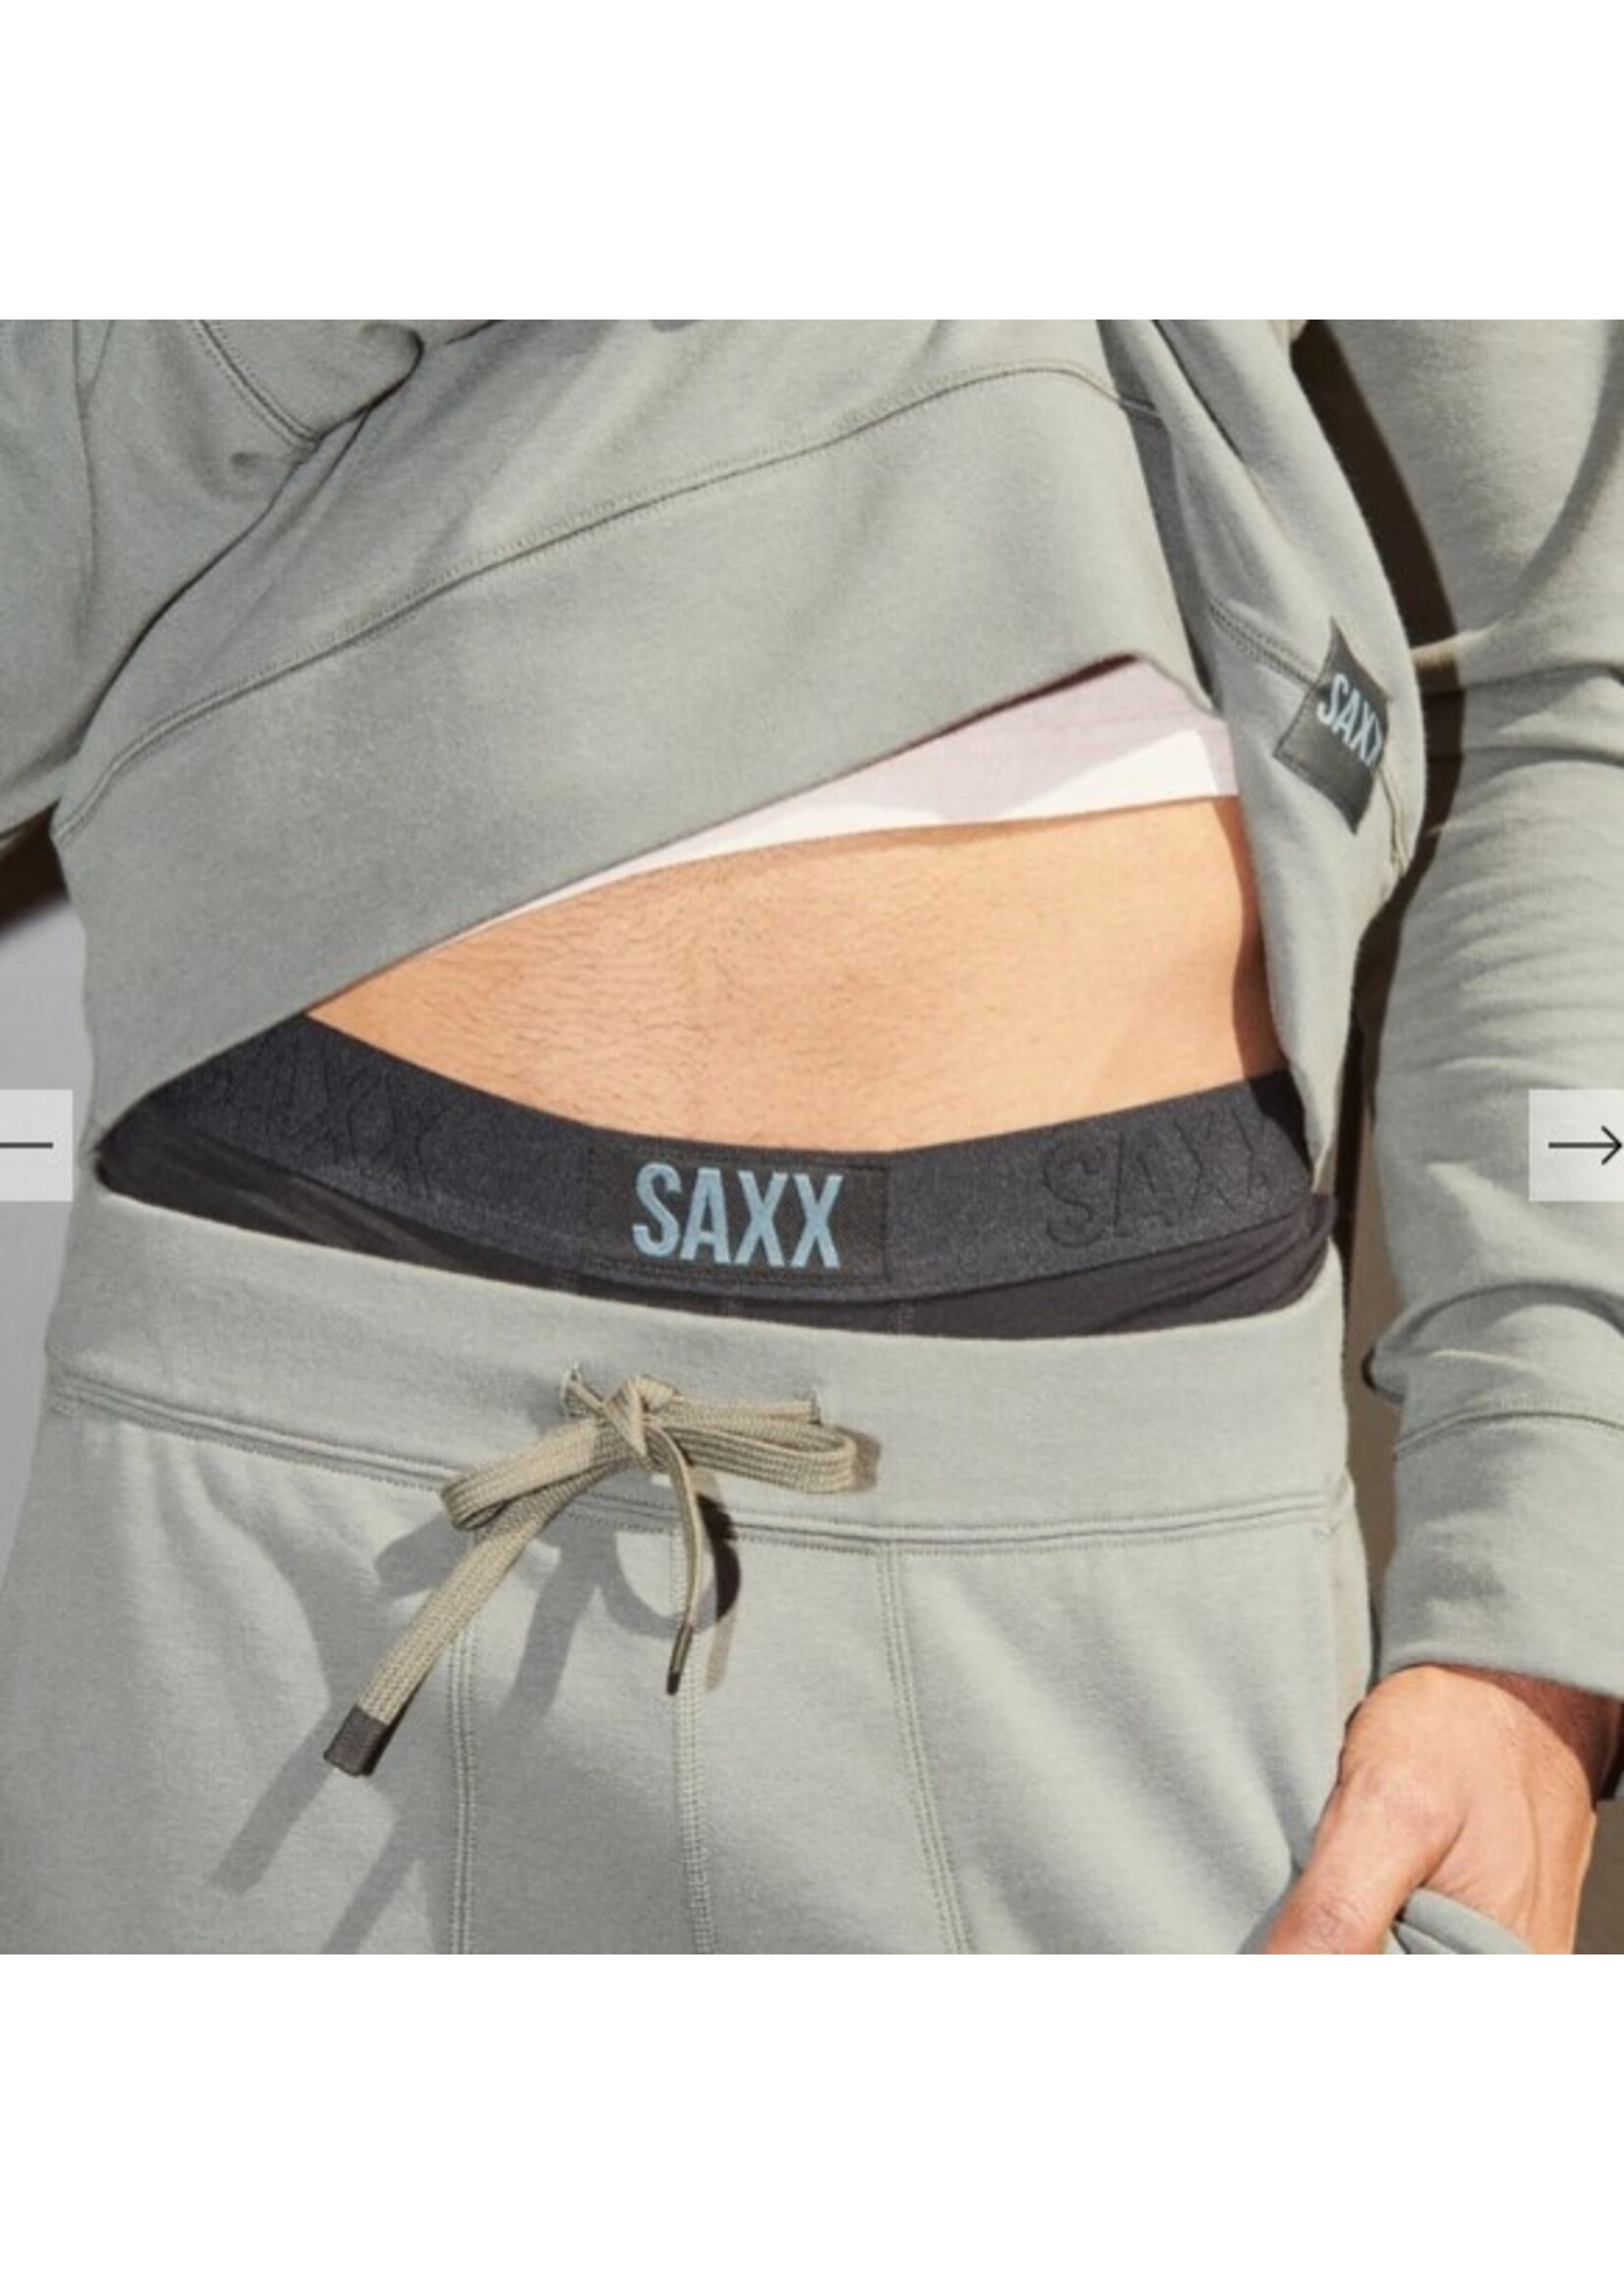 SAXX Saxx 3Six Five Pant